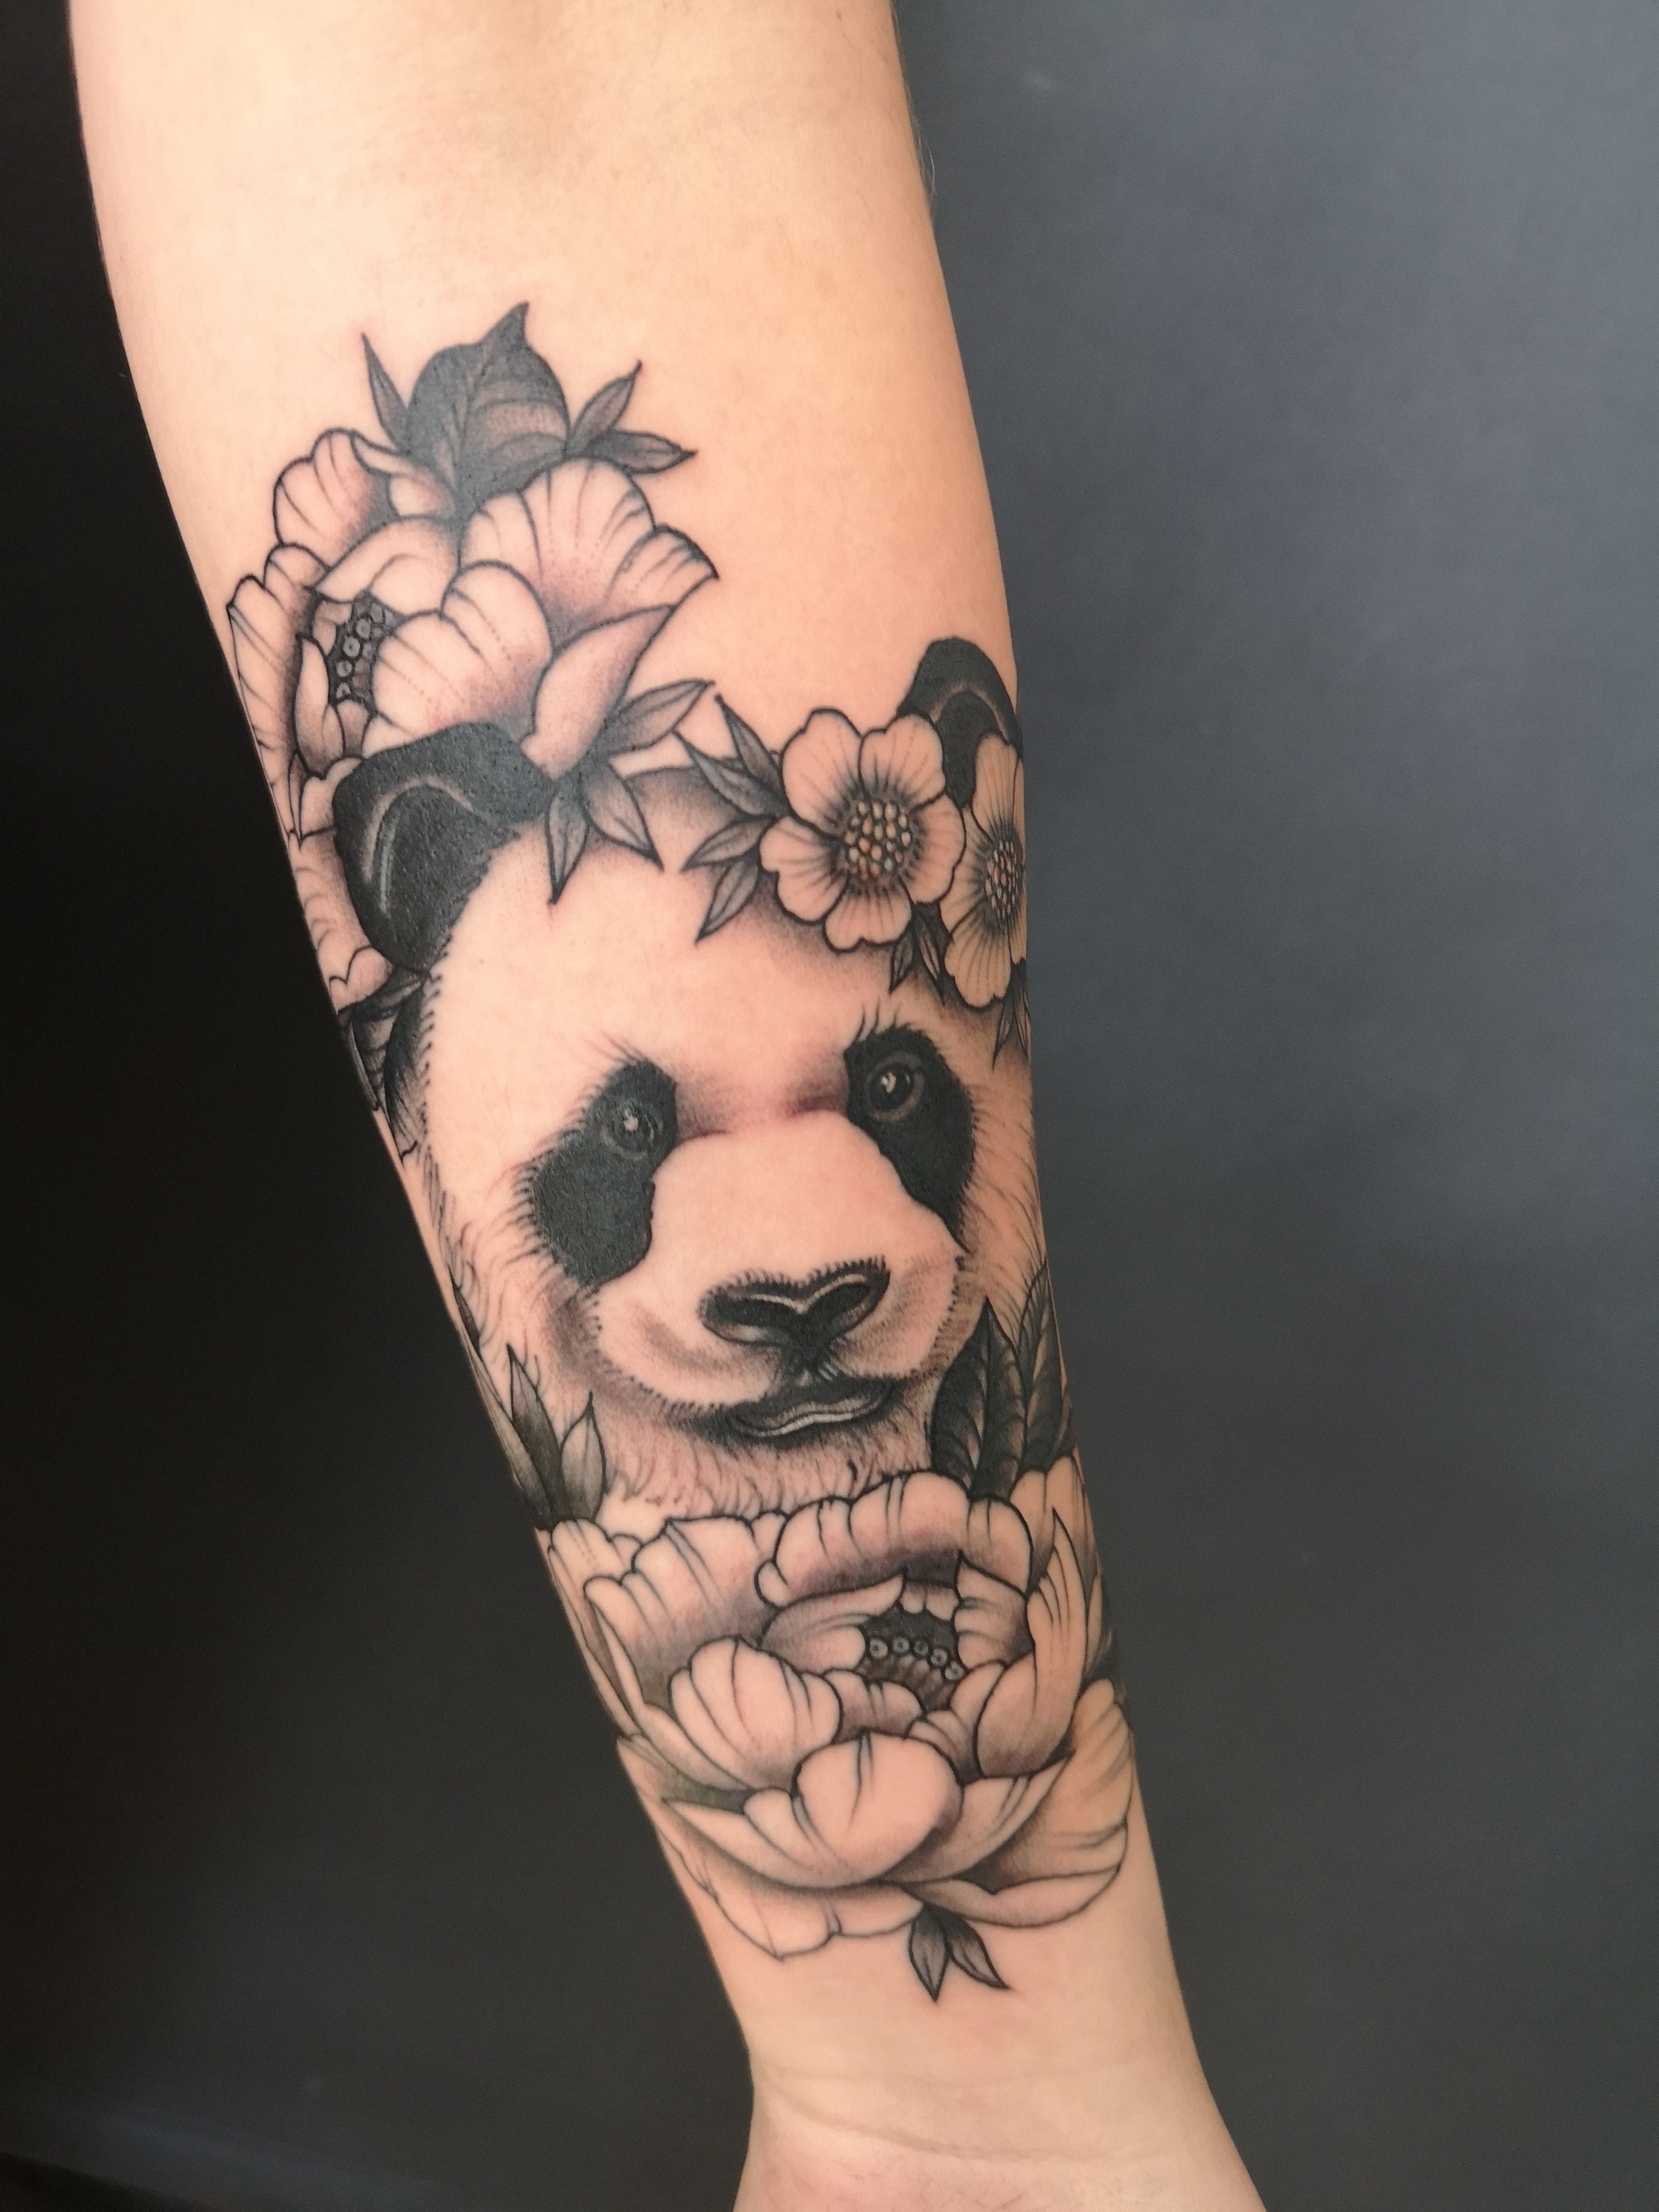 ONIXX Tattoos & Piercings - Fun geometric panda. | Facebook